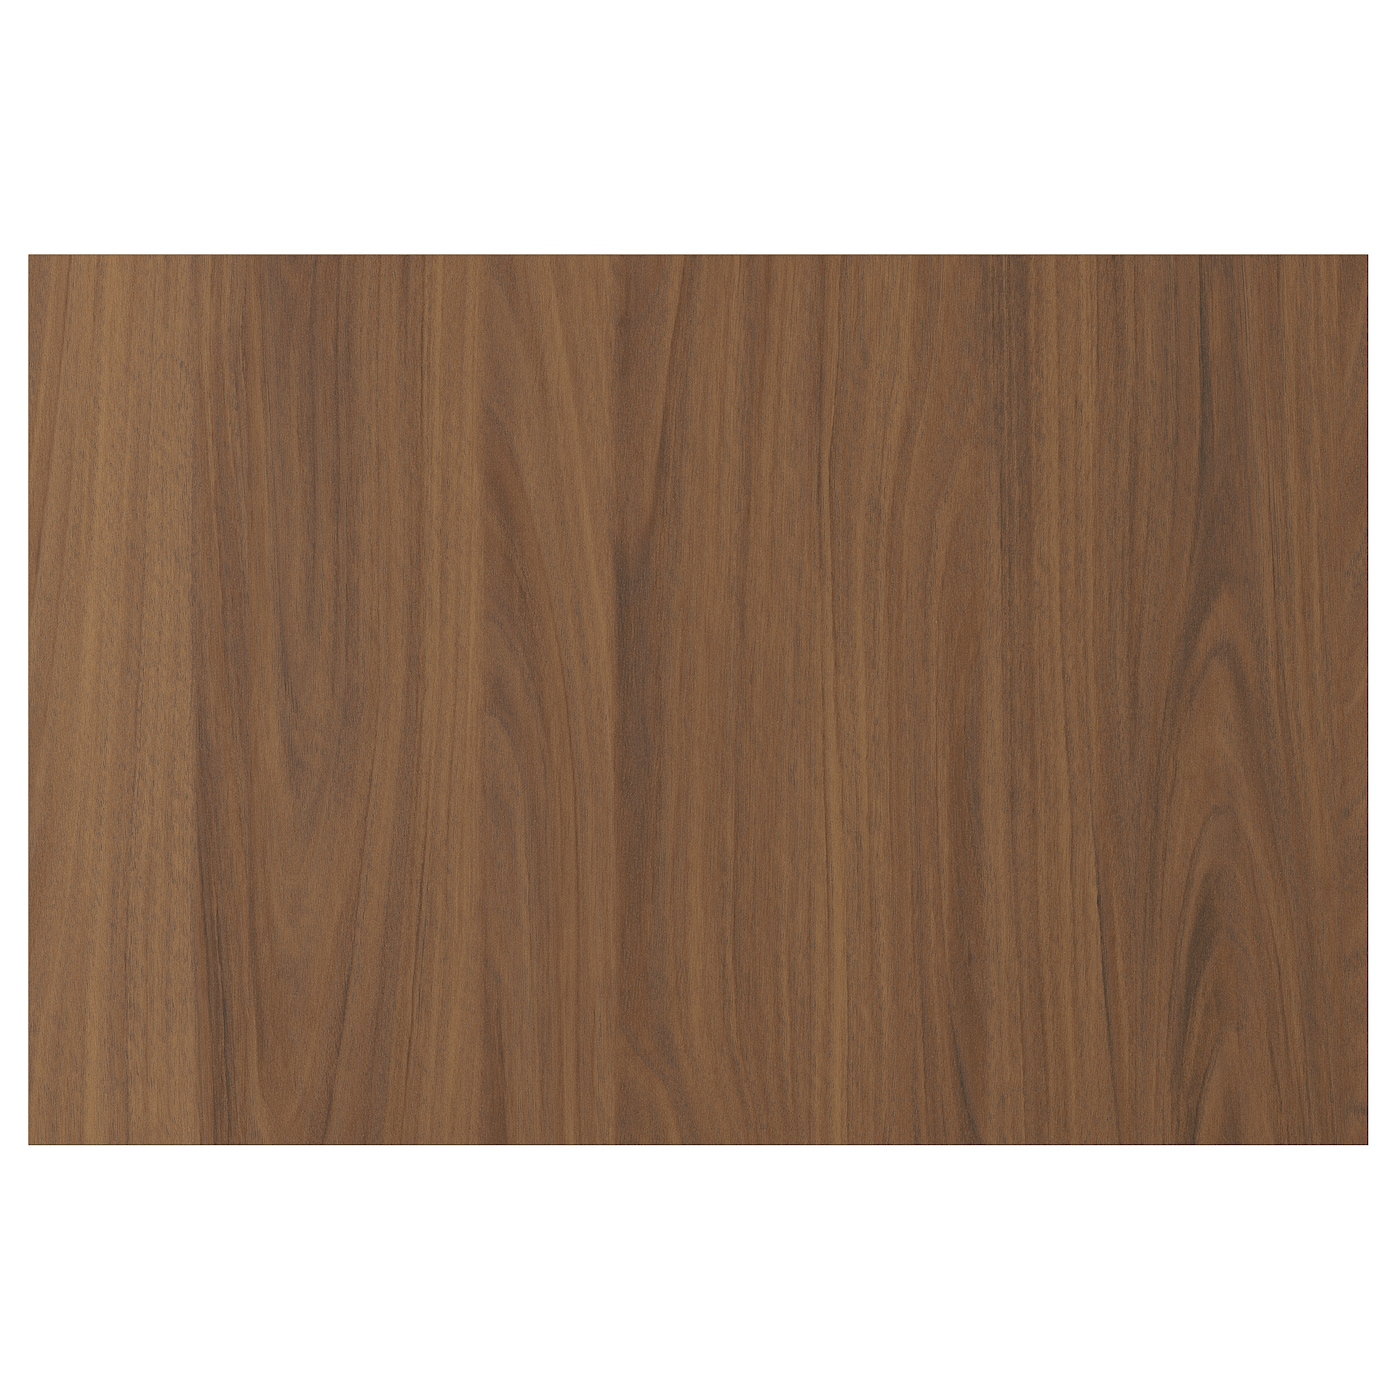 Дверца  - TISTORP IKEA/ ТИСТОРП ИКЕА,  60х40 см, коричневый